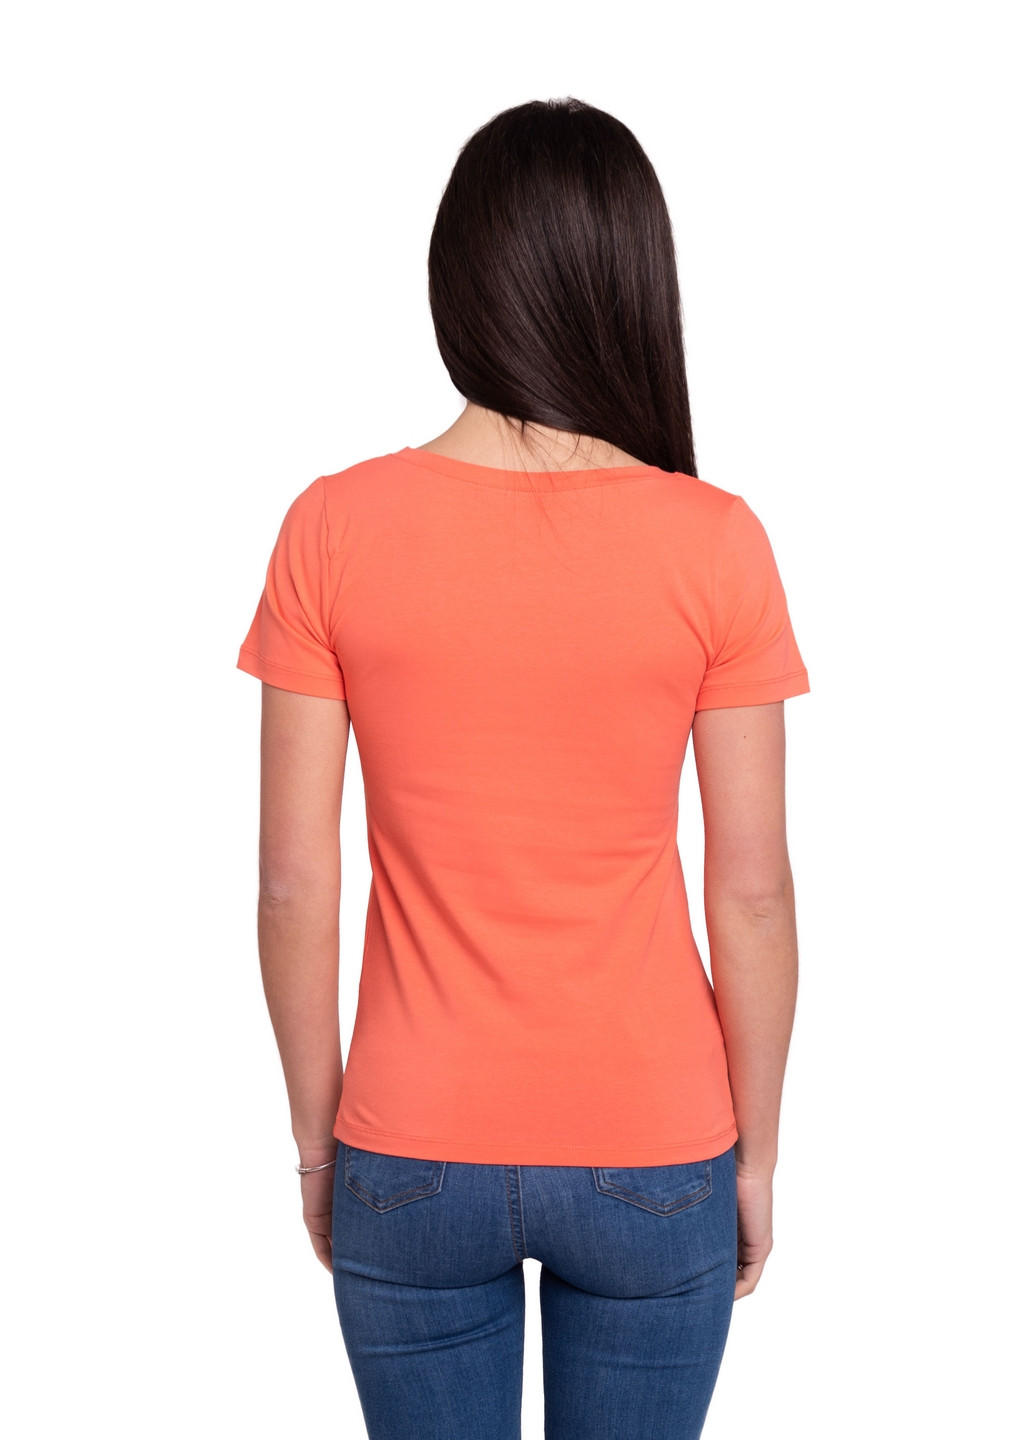 Коралловая всесезон футболка женская Наталюкс 41-2347